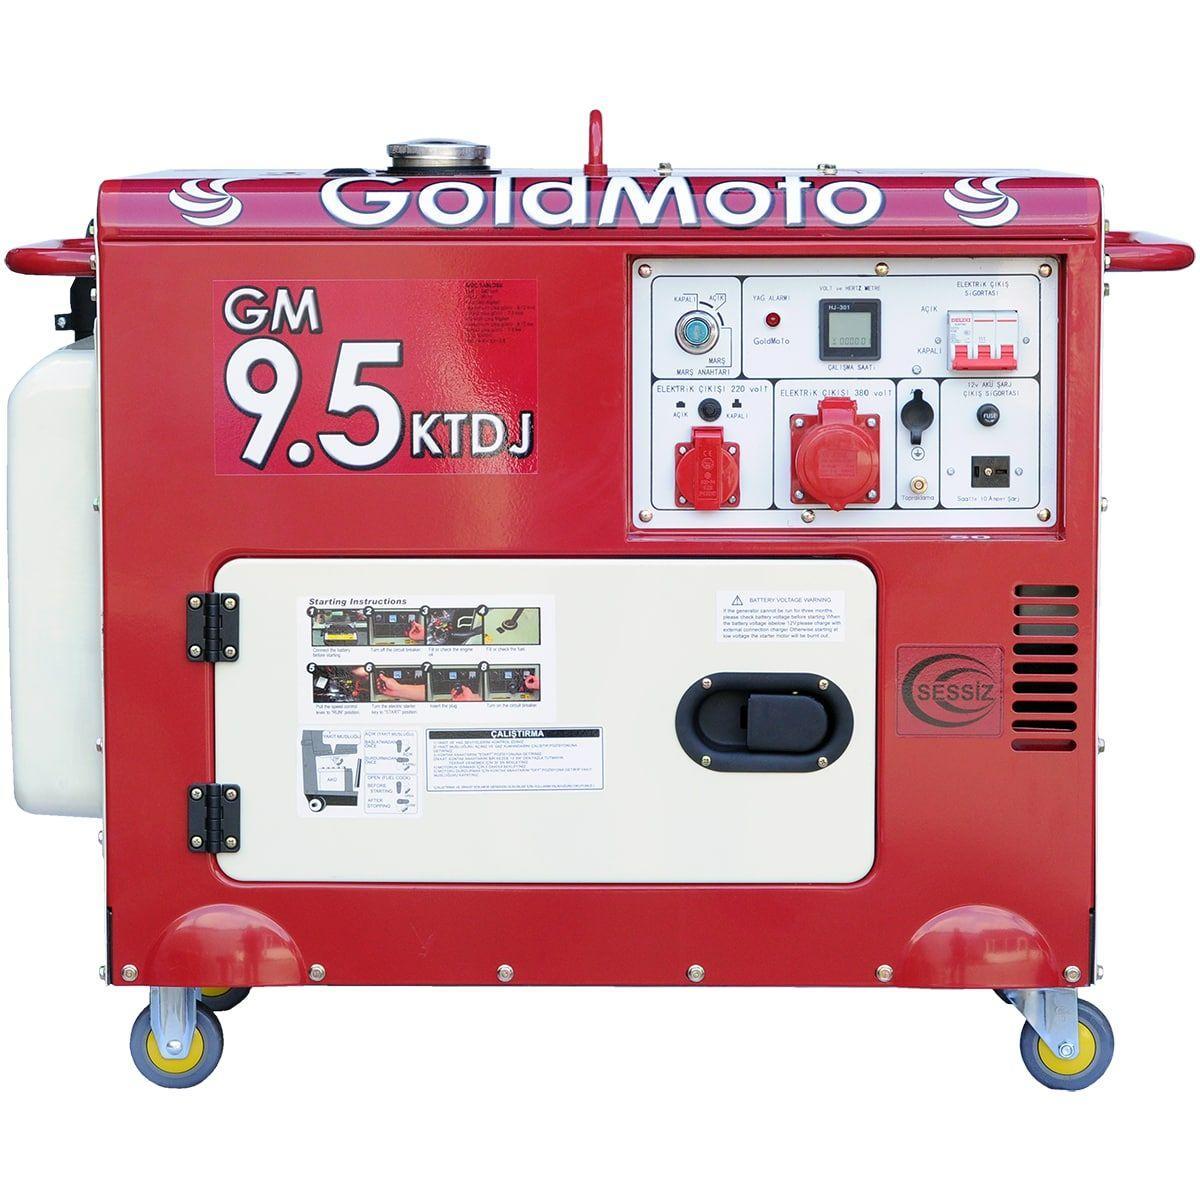 GoldMoto GM9.5KTDJ